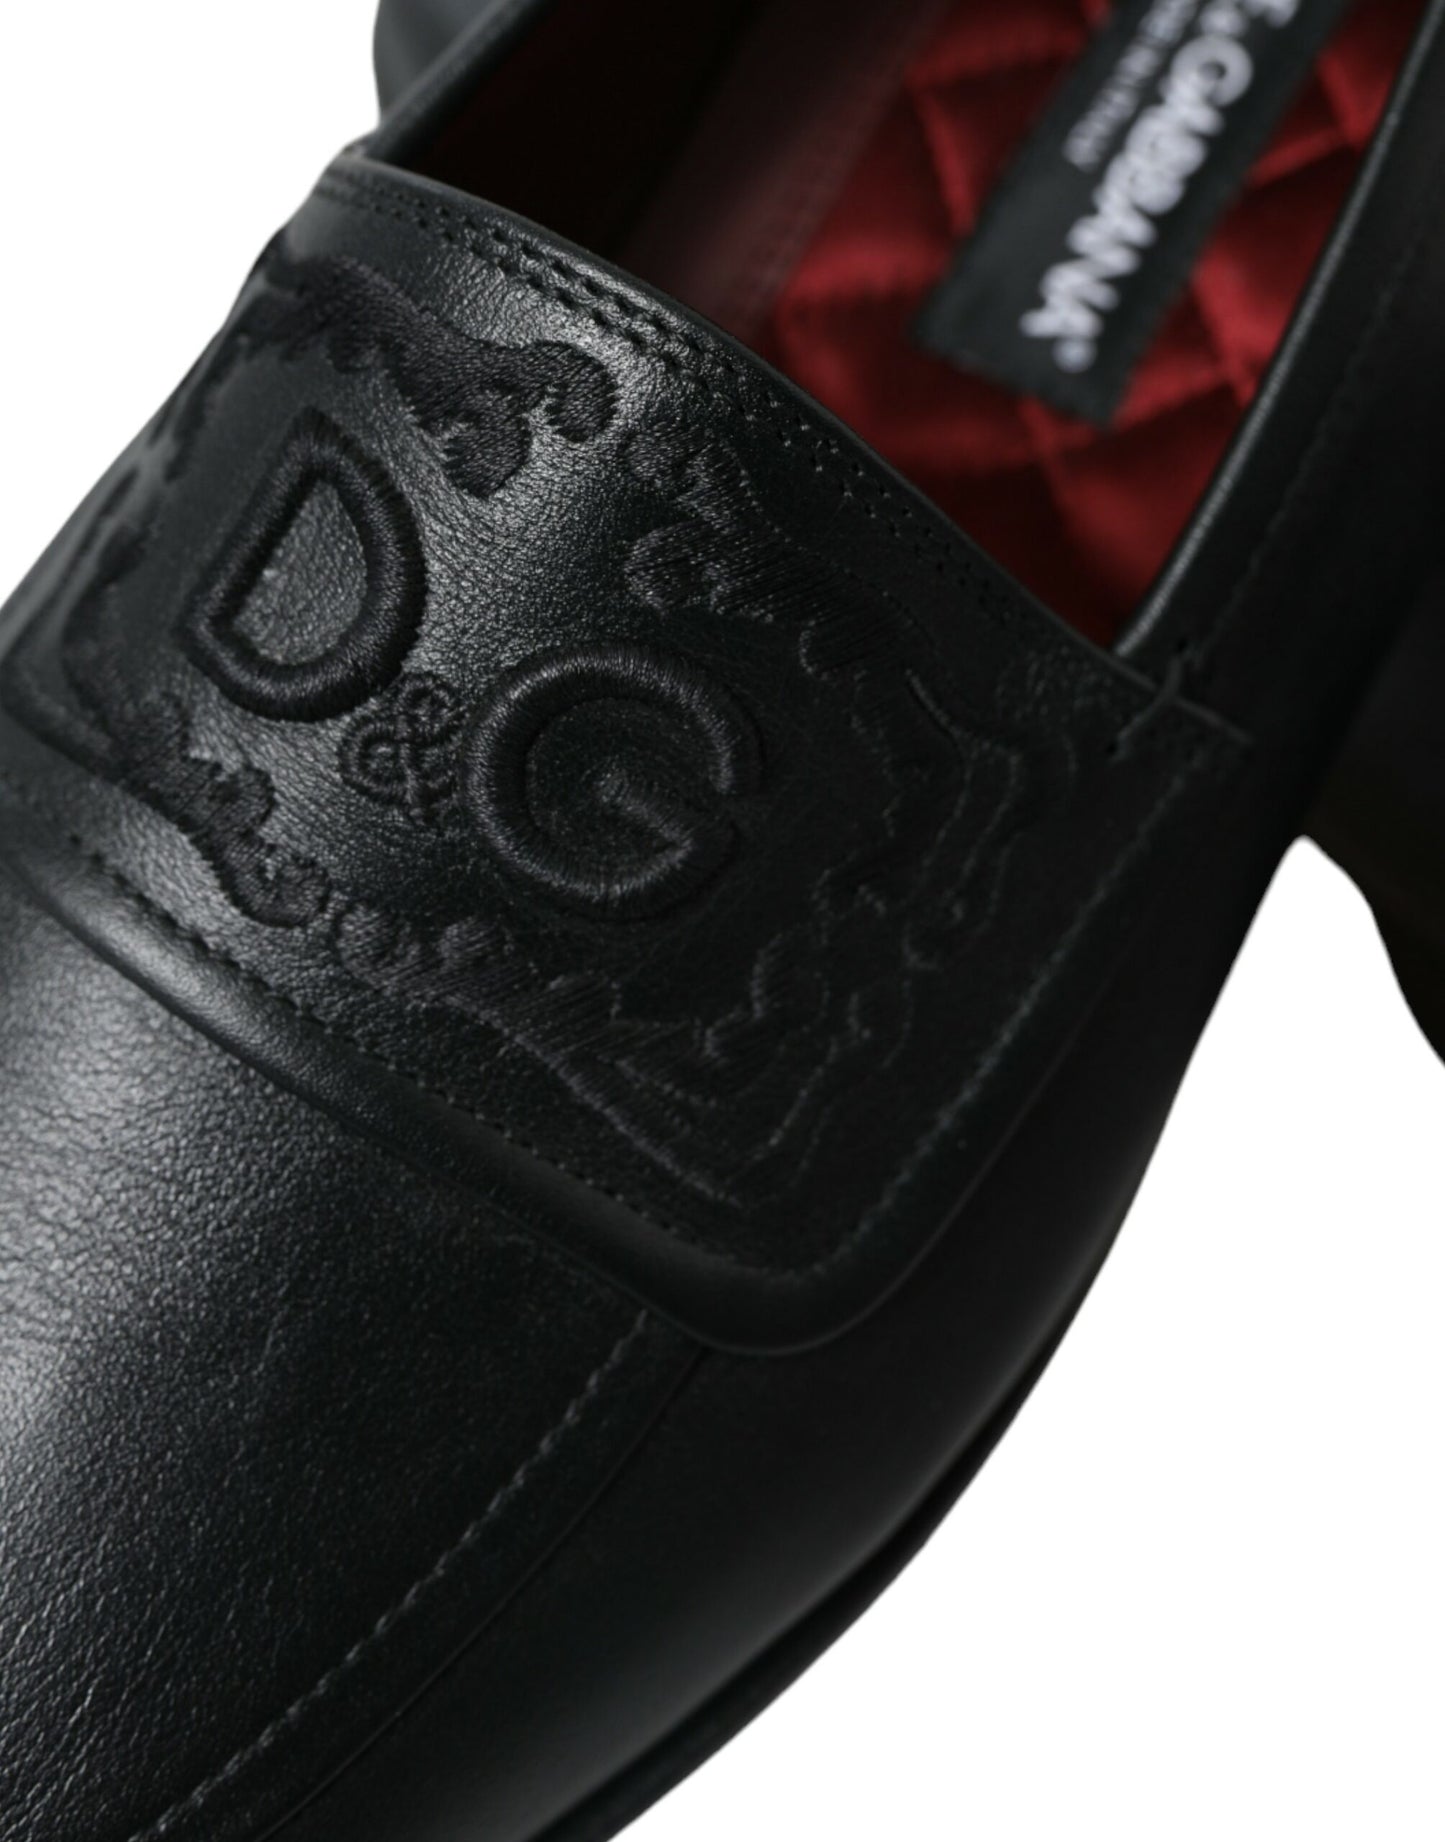 Fashionsarah.com Fashionsarah.com Dolce & Gabbana Black Leather Logo Embroidery Loafers Dress Shoes